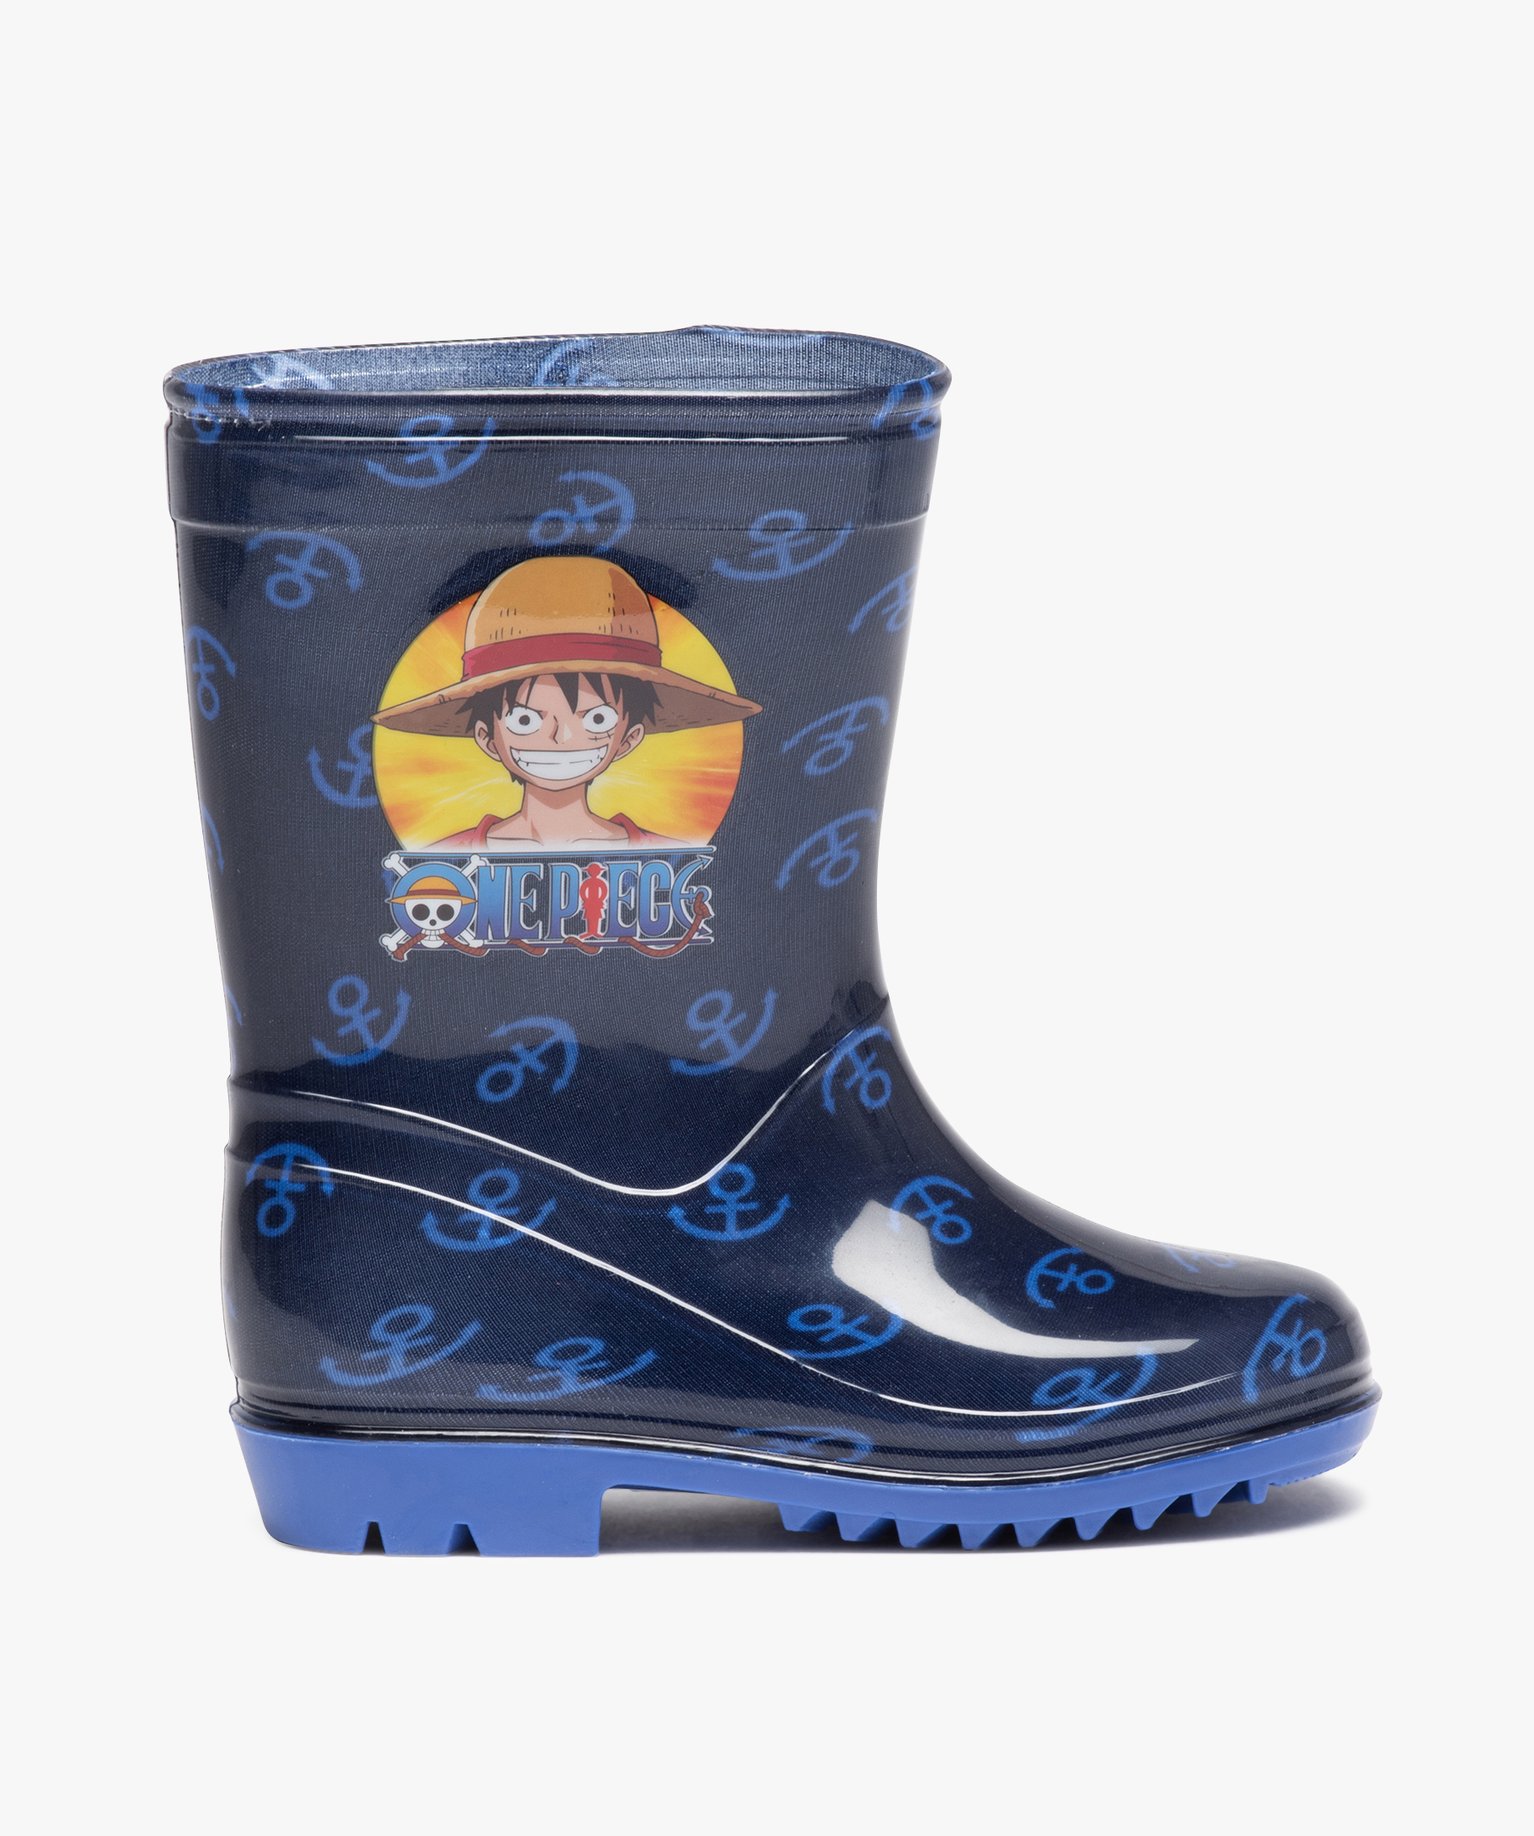 Bottes de pluie garçon imprimées ancre marine - One Piece - 29 - bleu - ONE PIECE